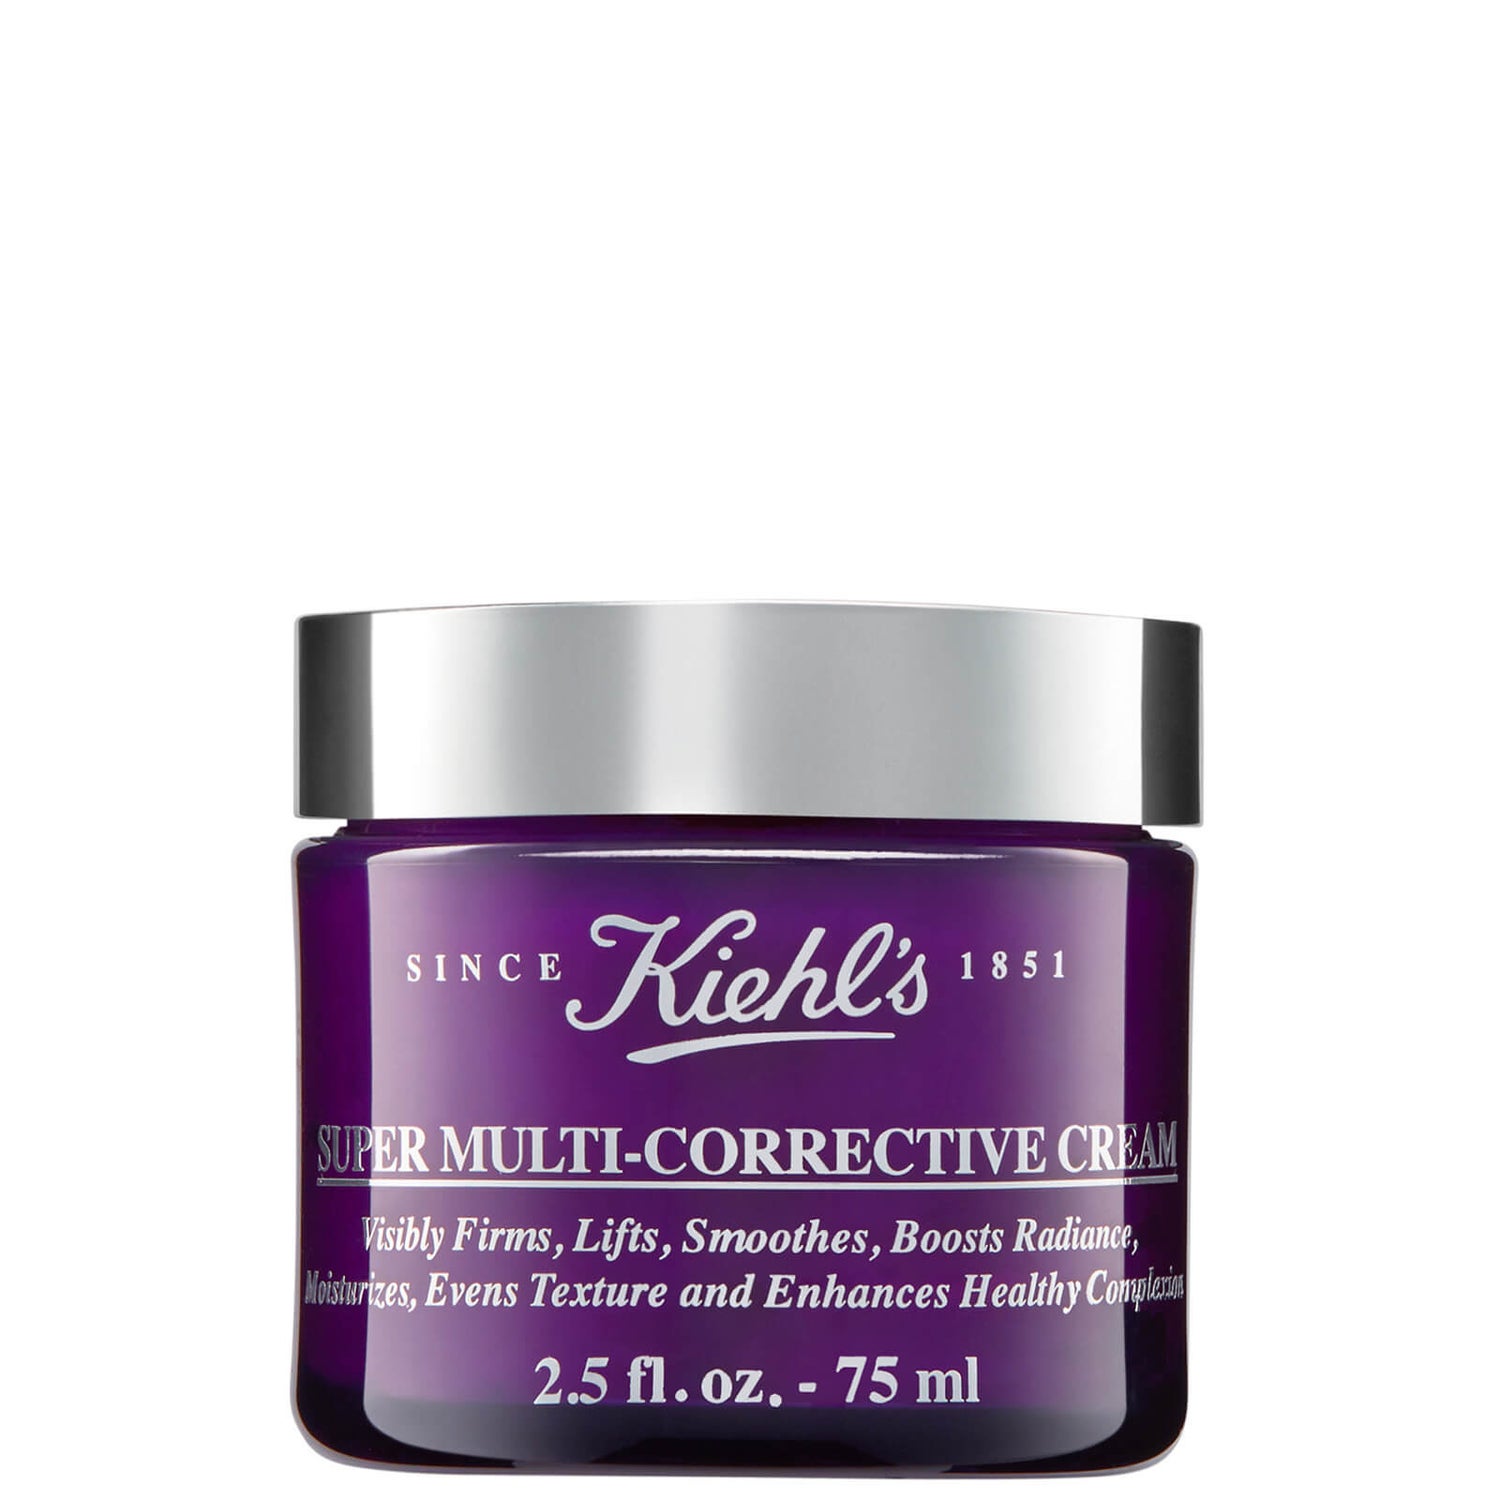 Crème super multi-corrective de Kiehl's (tailles diverses)